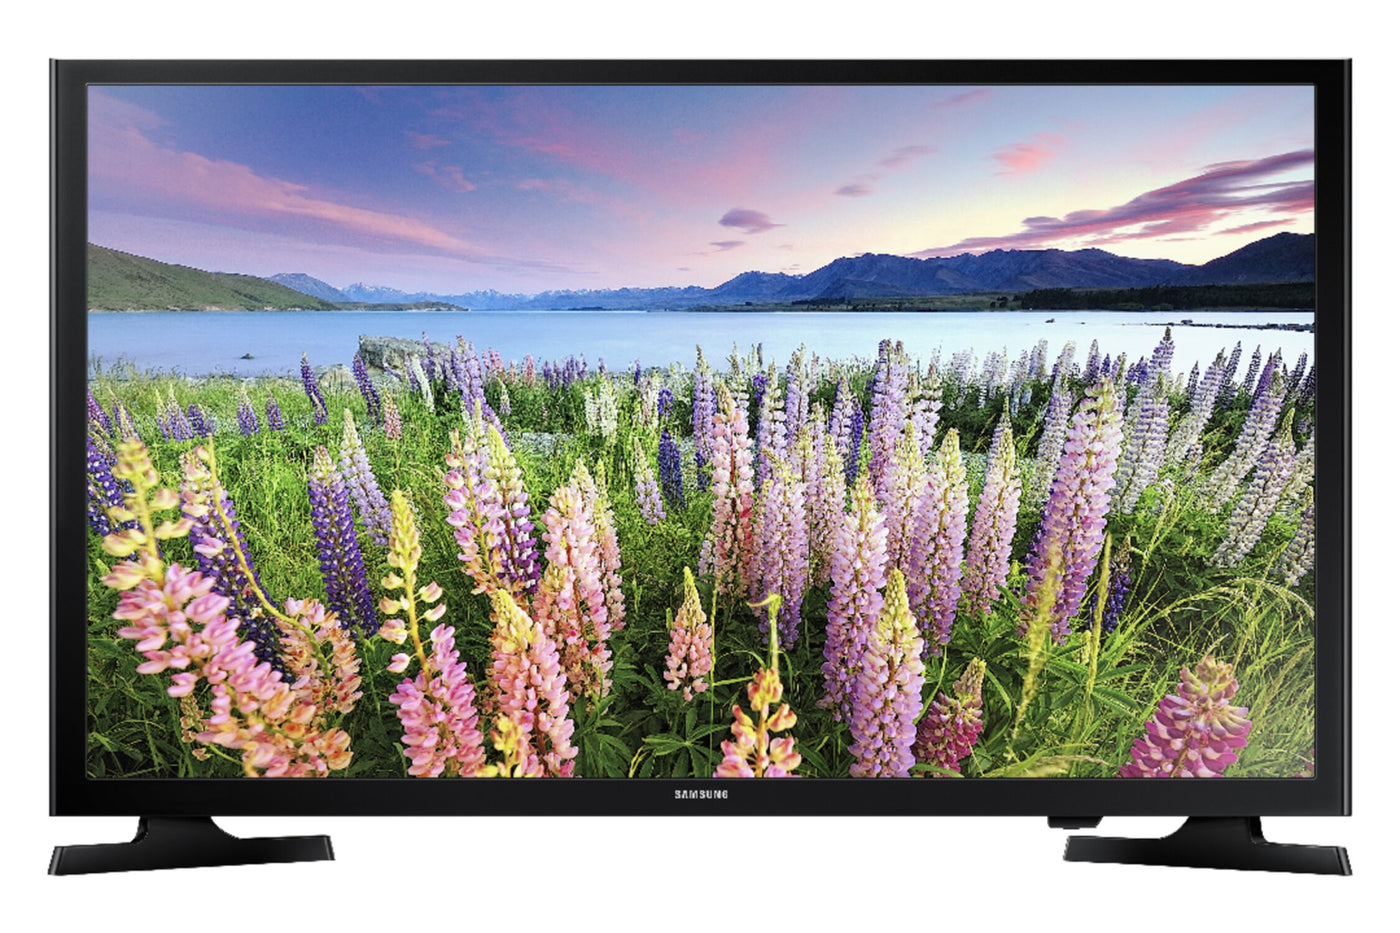 Samsung 40 LED 1080p Smart HDTV